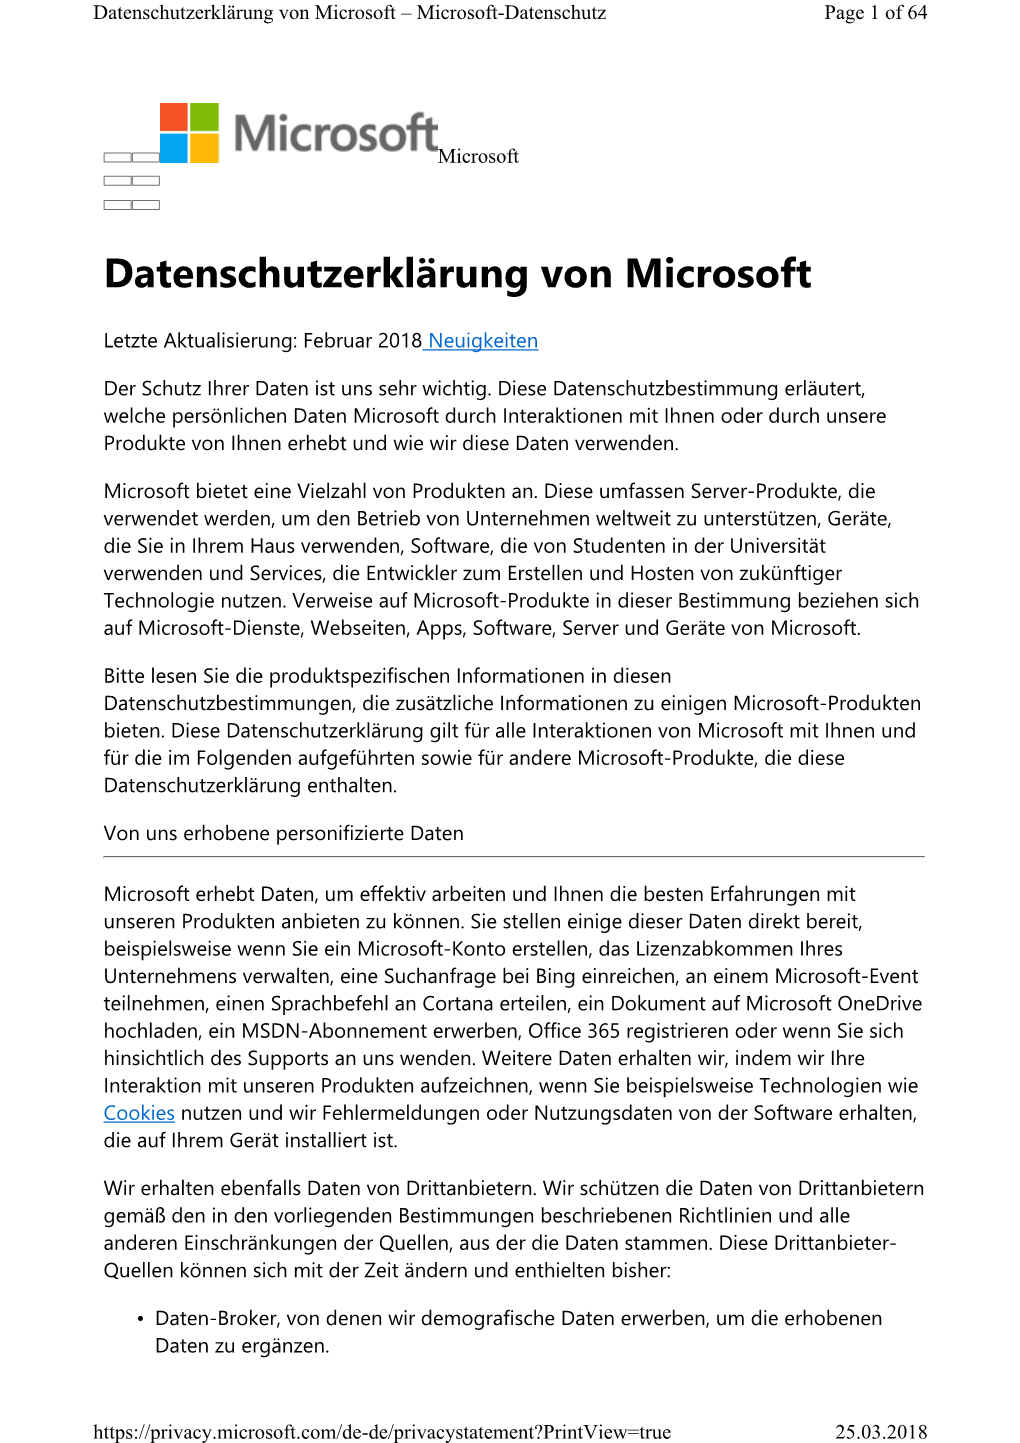 Datenschutzerklärung Von Microsoft – Microsoft-Datenschutz Page 1 of 64